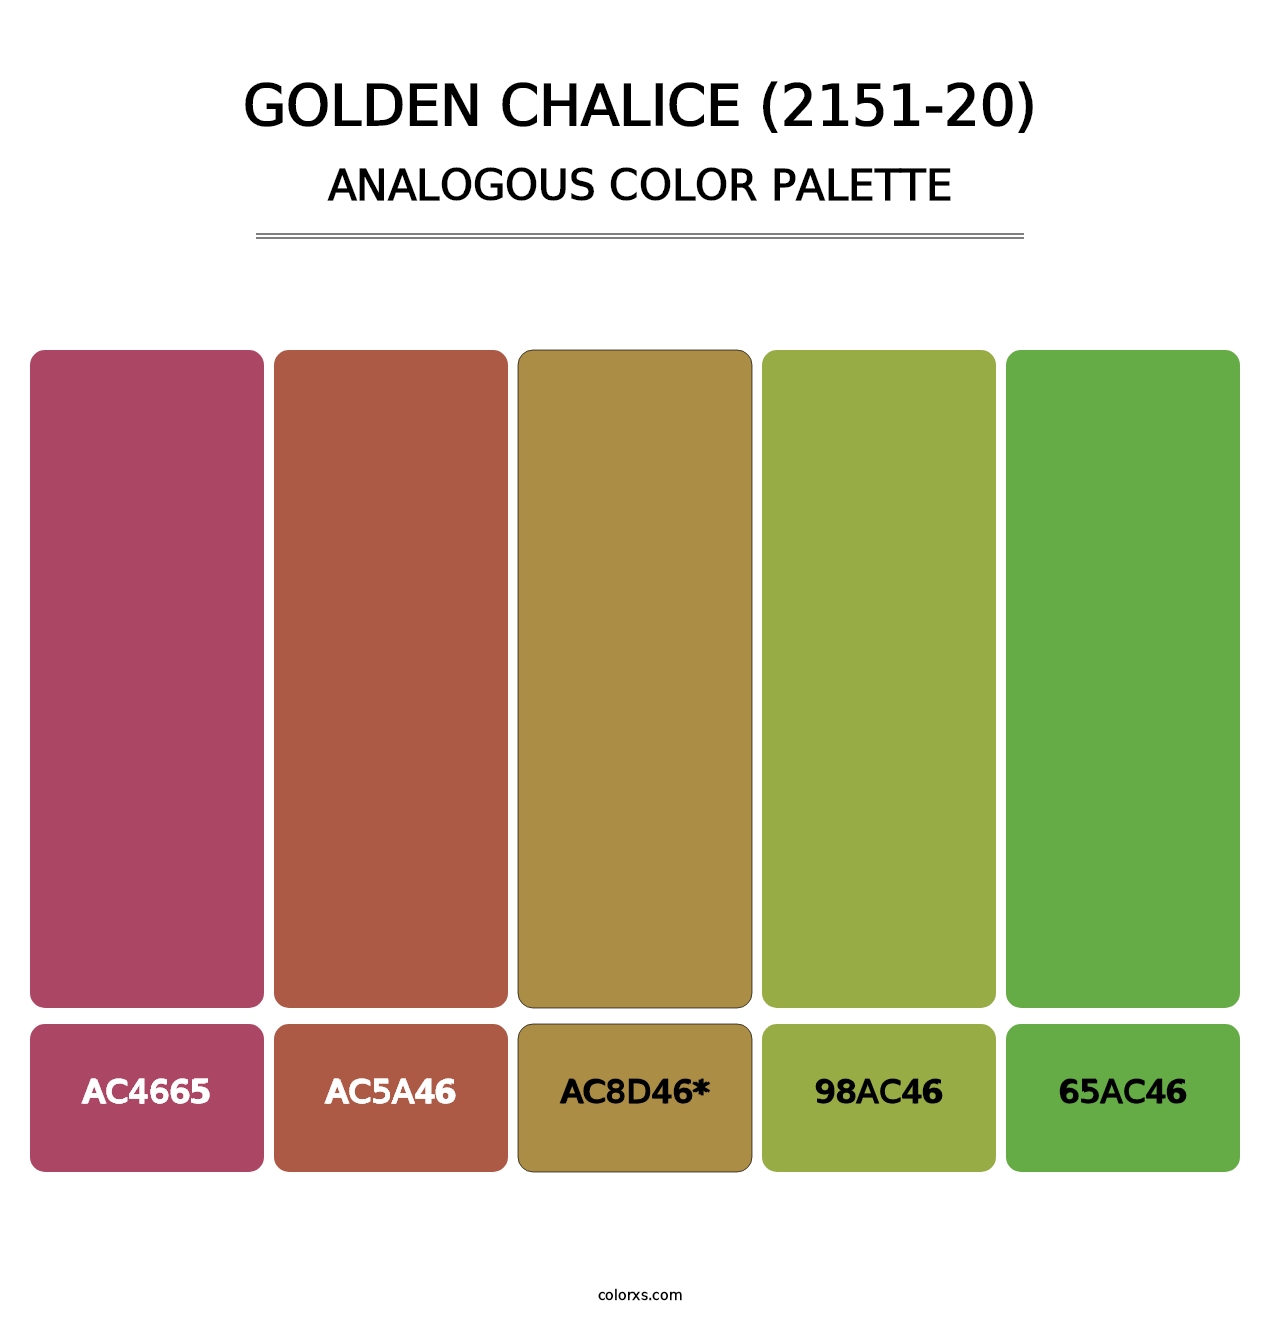 Golden Chalice (2151-20) - Analogous Color Palette